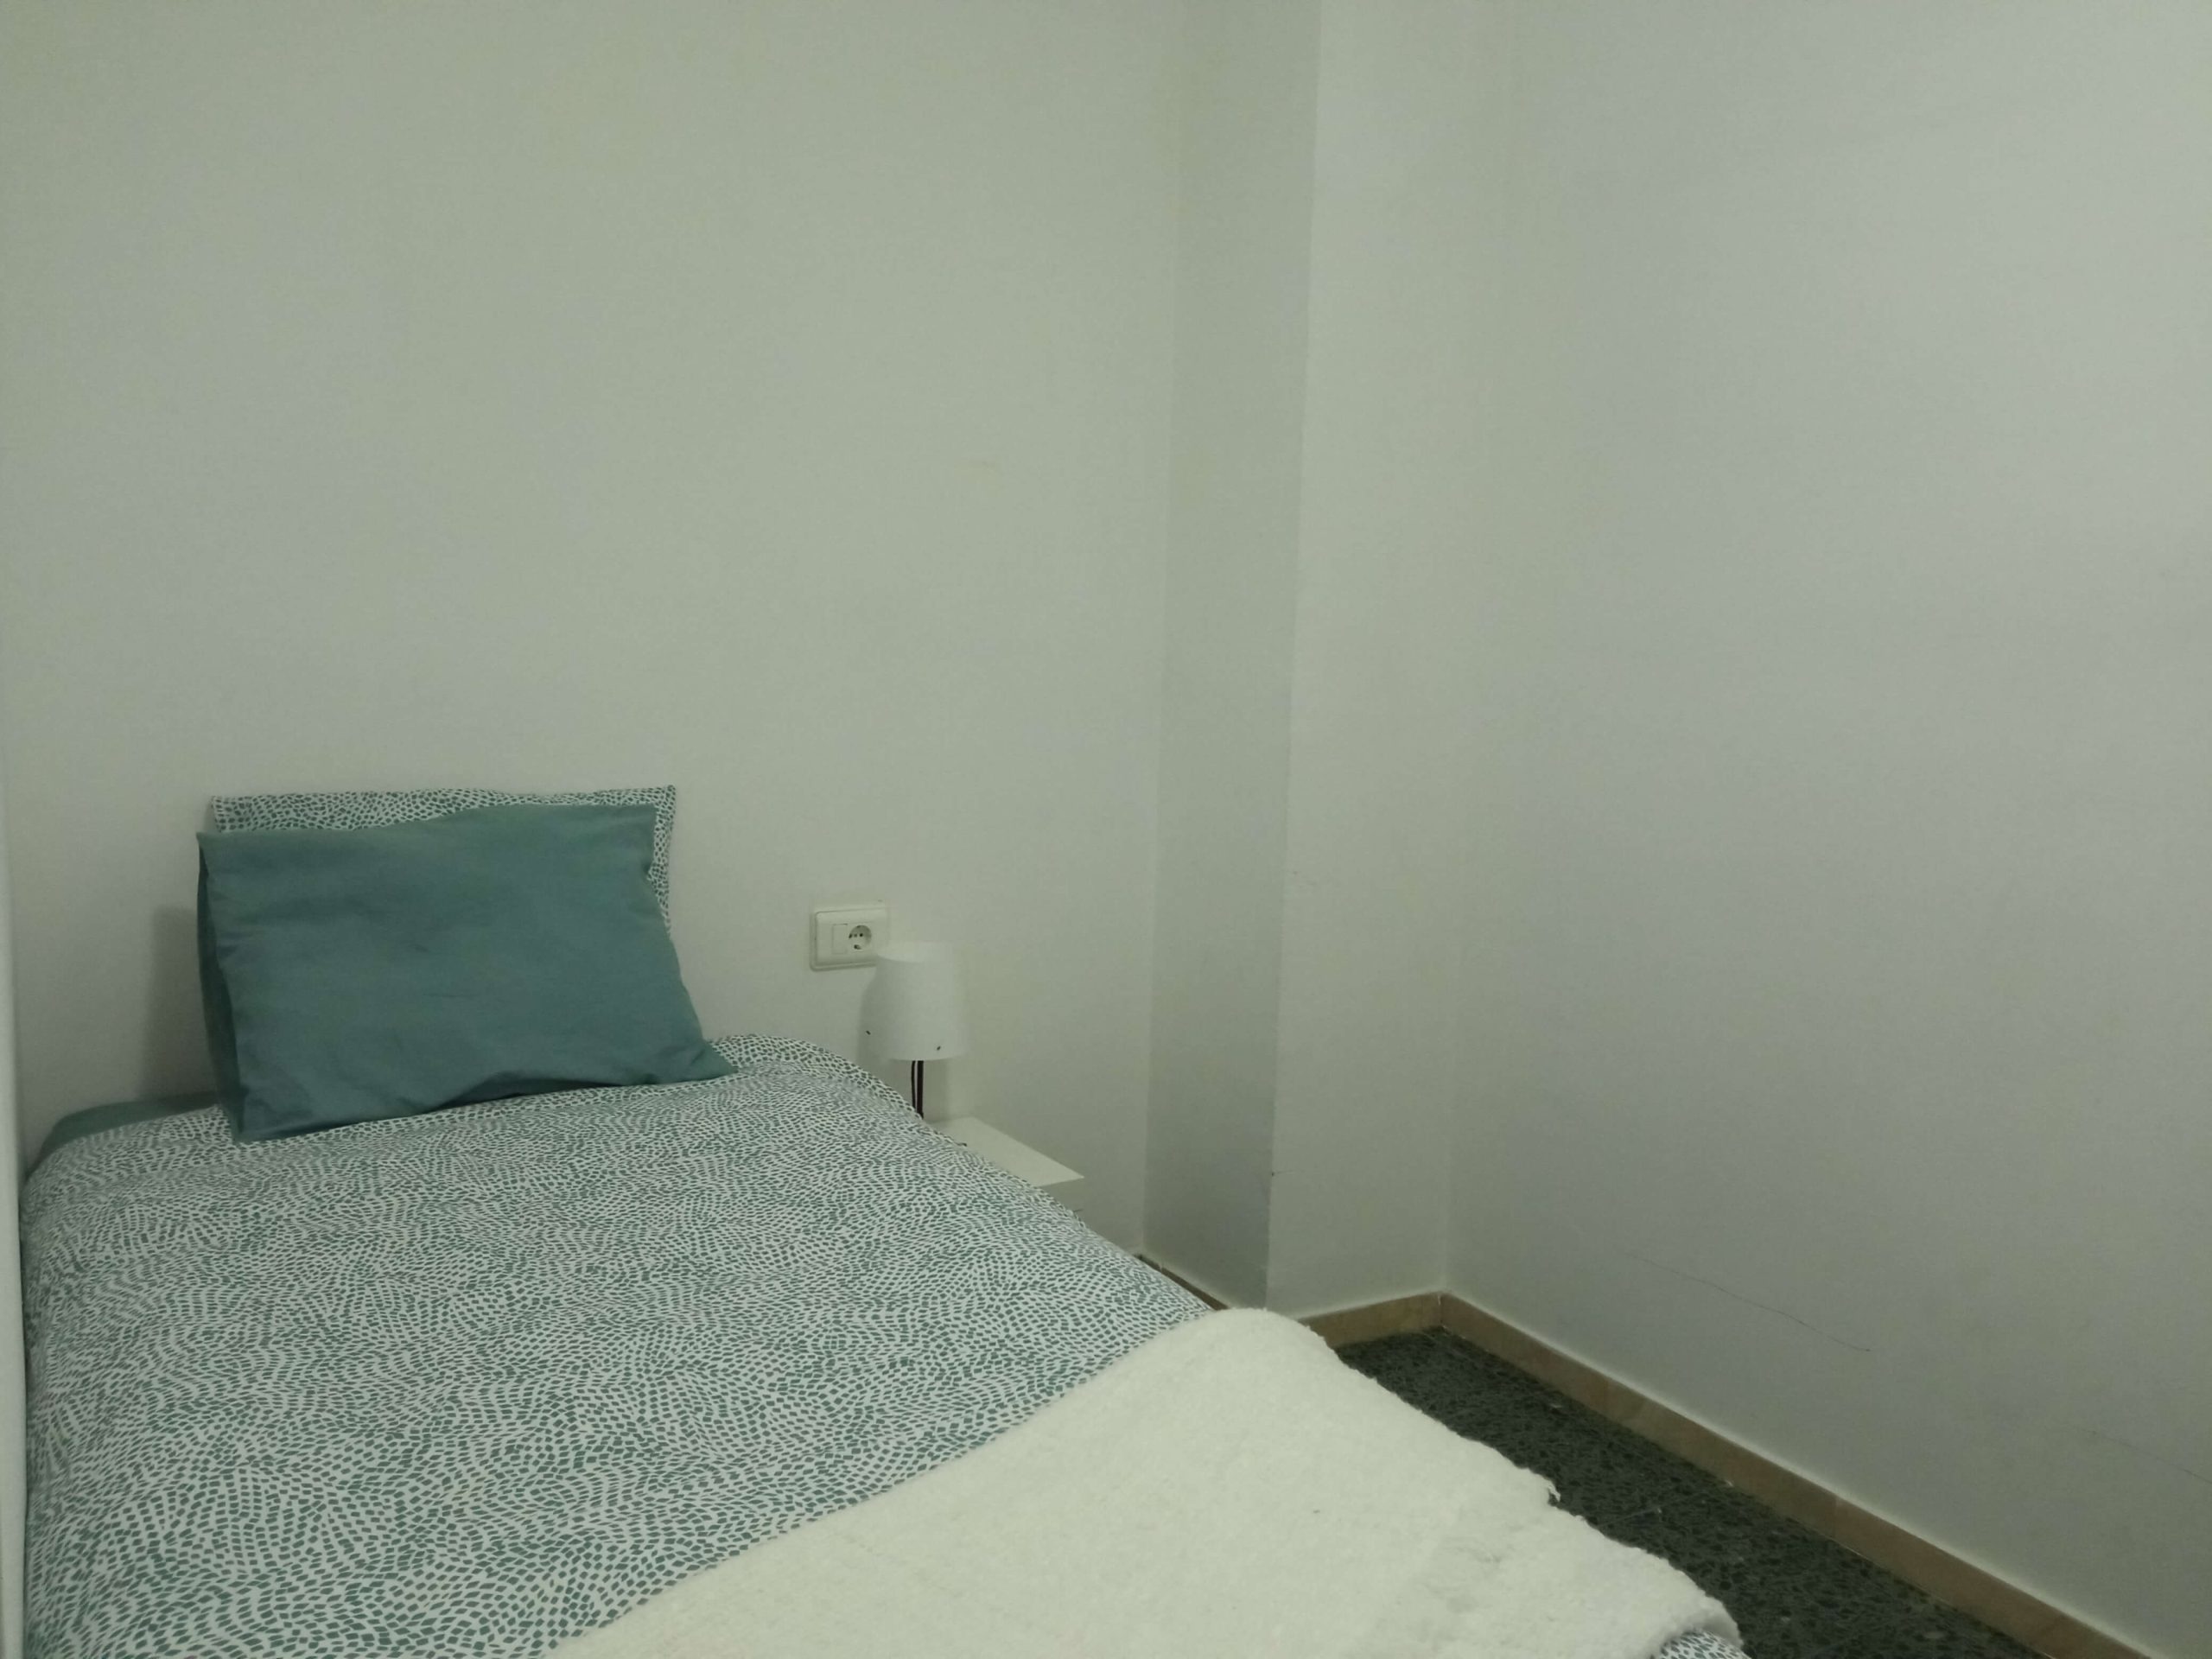 Bedroom 4 apartment for rent in valencia, guillen